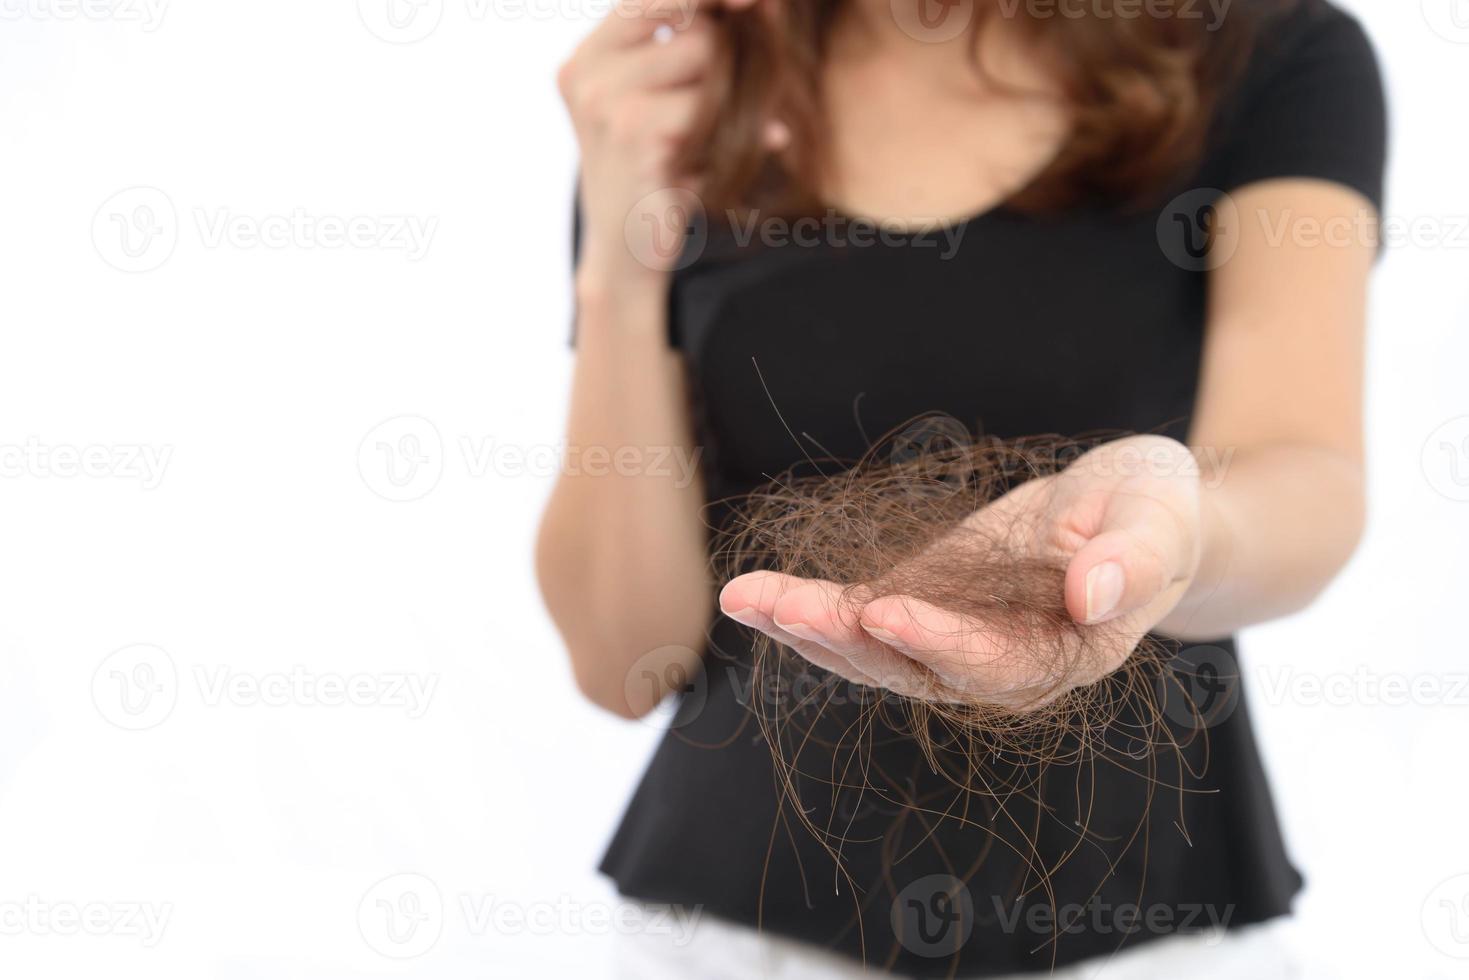 vrouwen met haarprobleem die haarverlies in de hand houden, geïsoleerd op een witte achtergrond foto